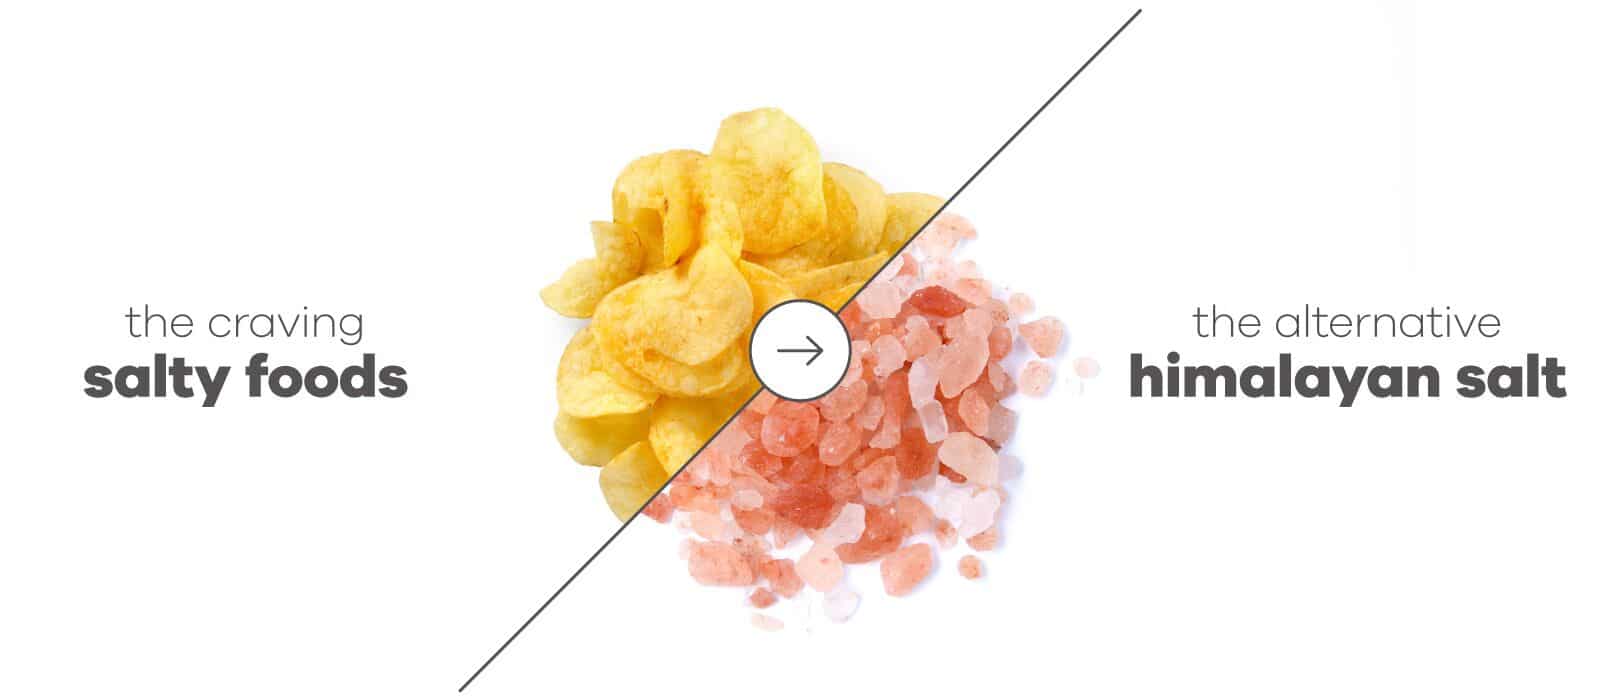 Image of potato chips with an arrow to pink himalayan salt